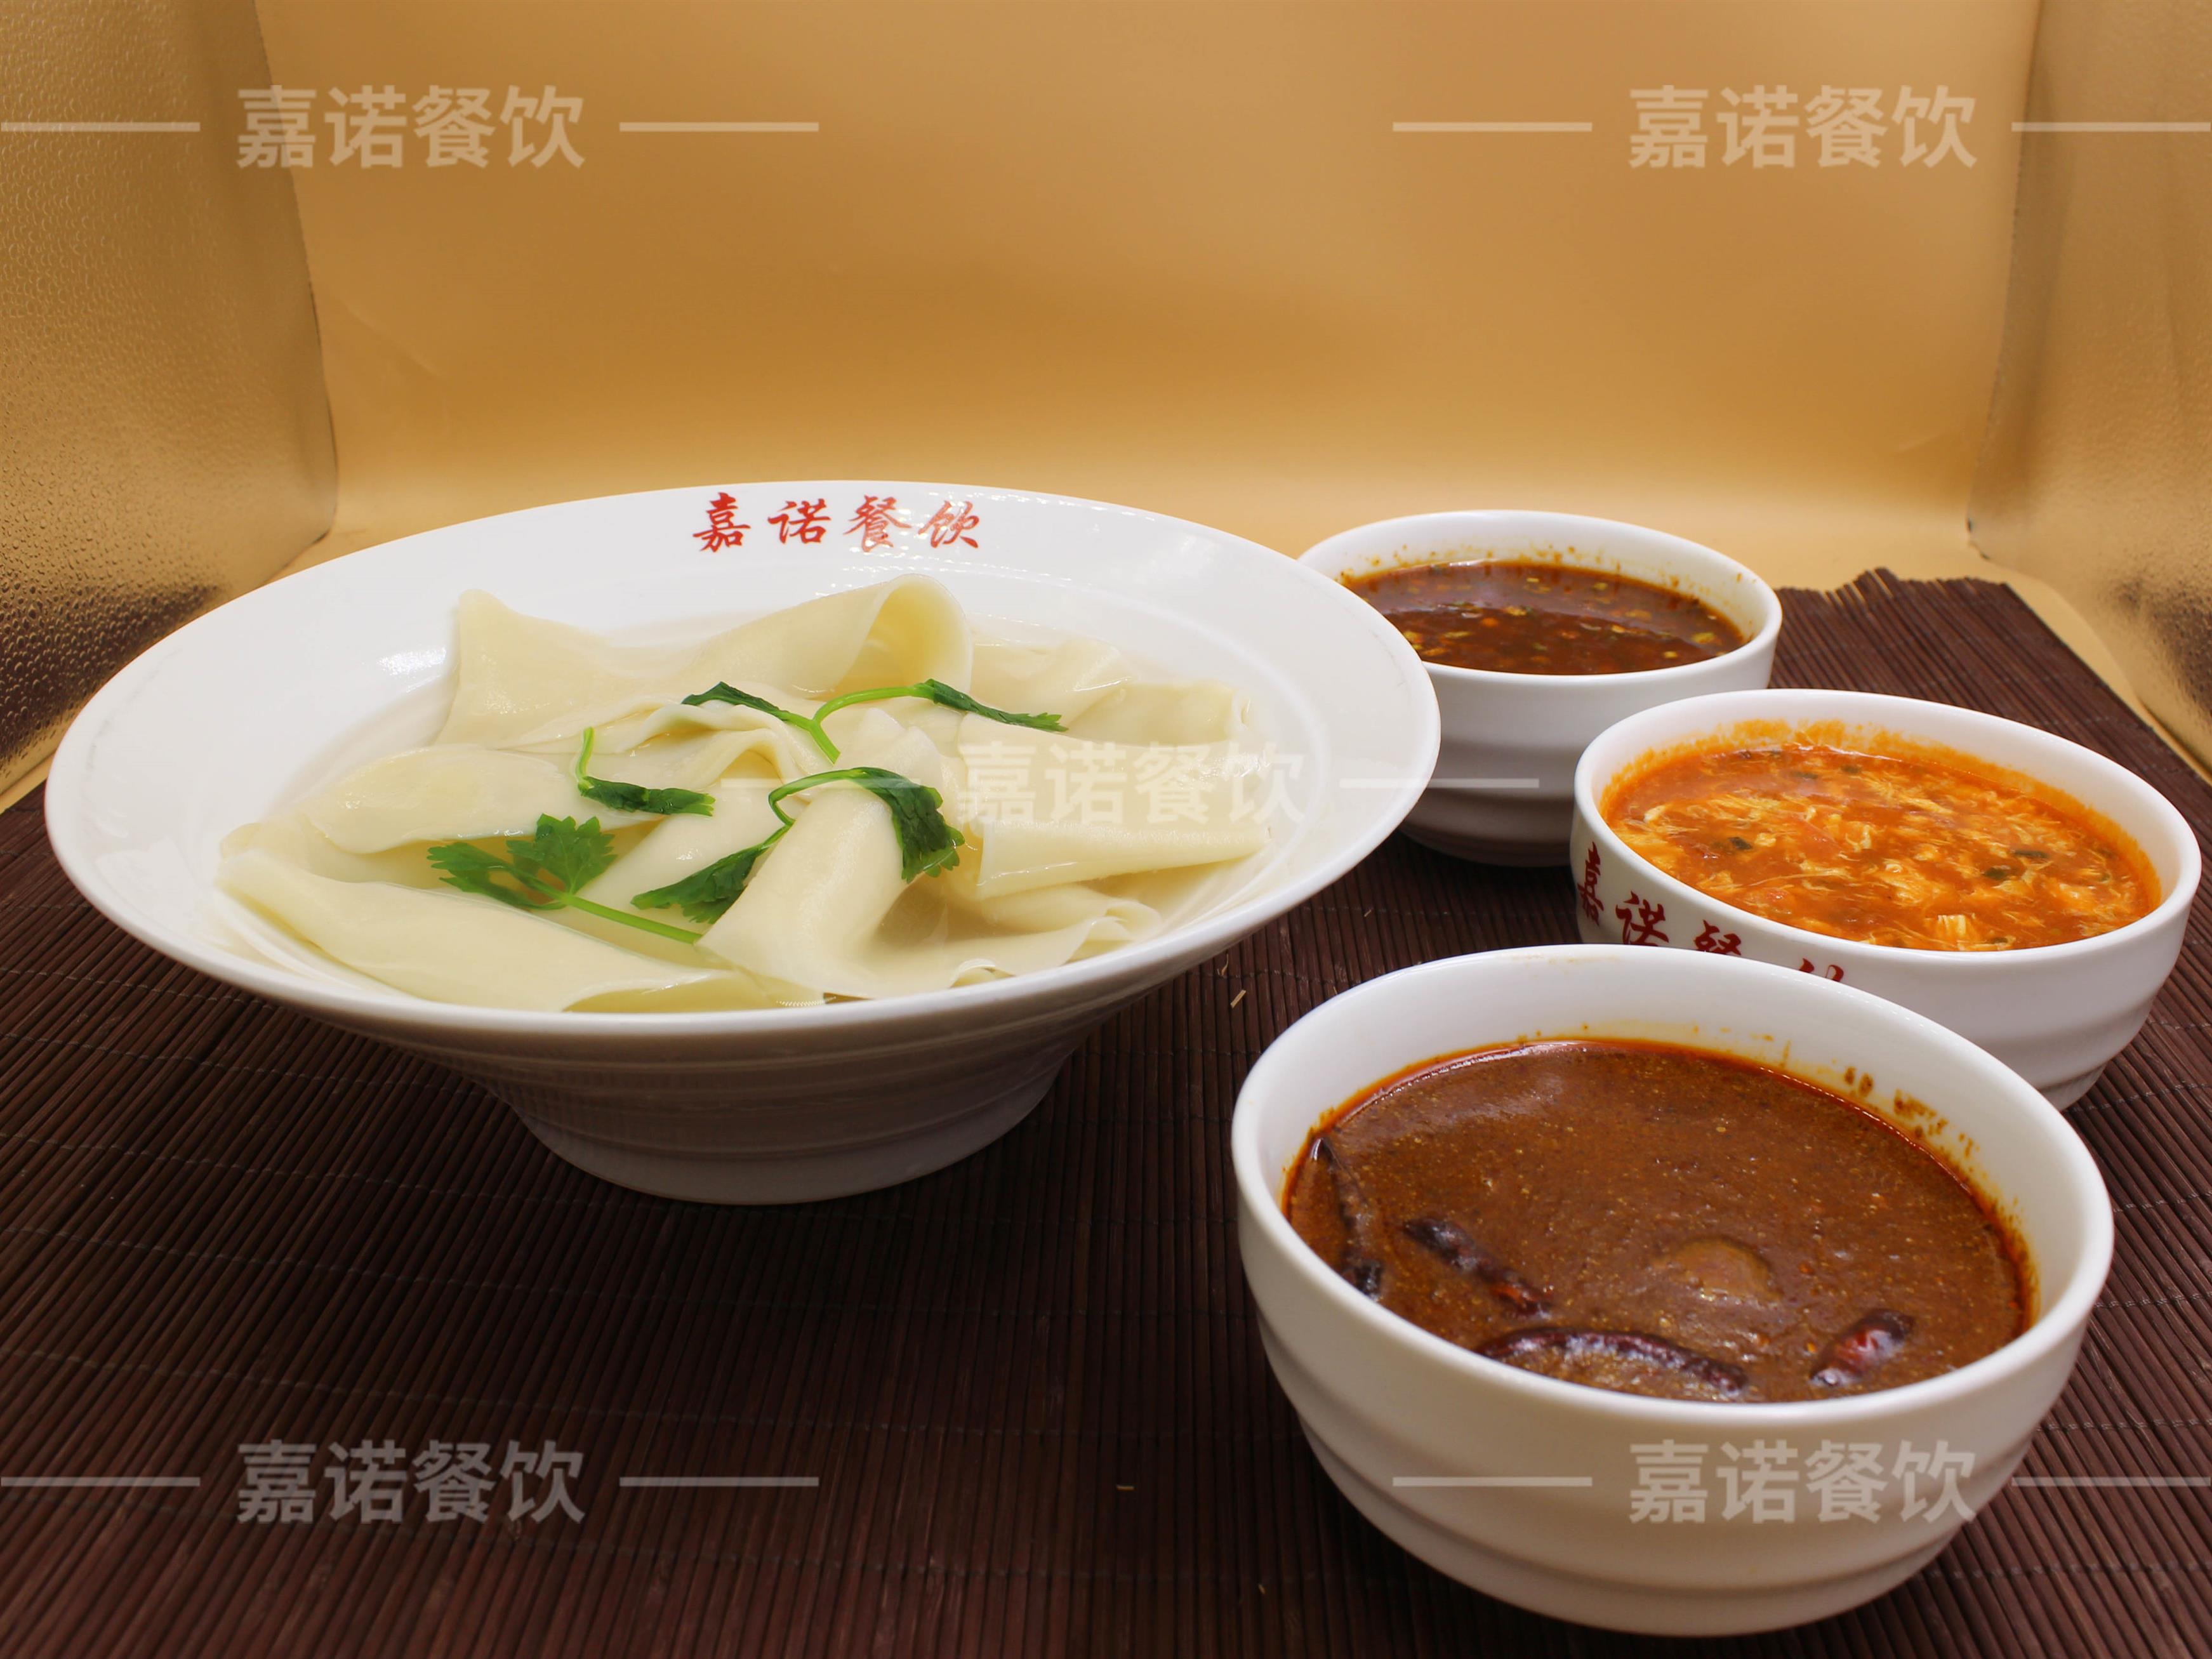 面食小吃培训学校 武汉热干面 品种繁多 健康美味